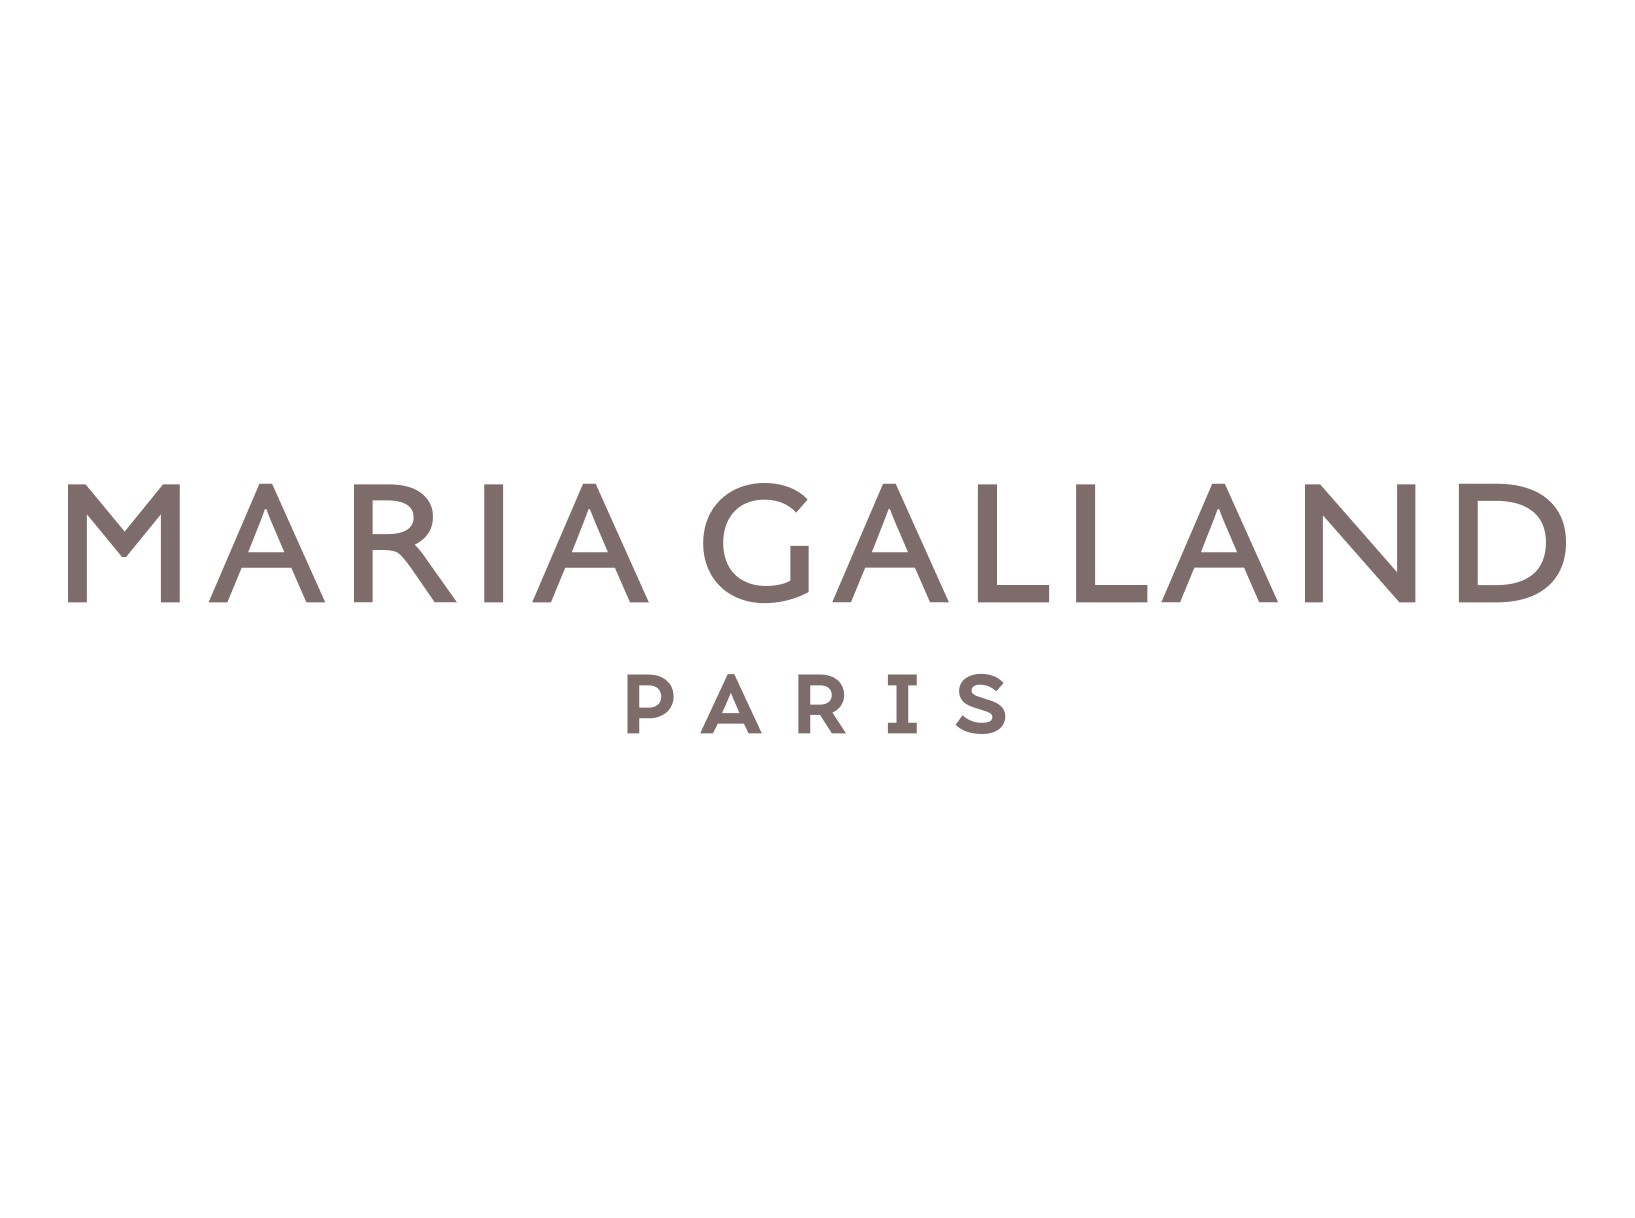 Maria Galland Paris